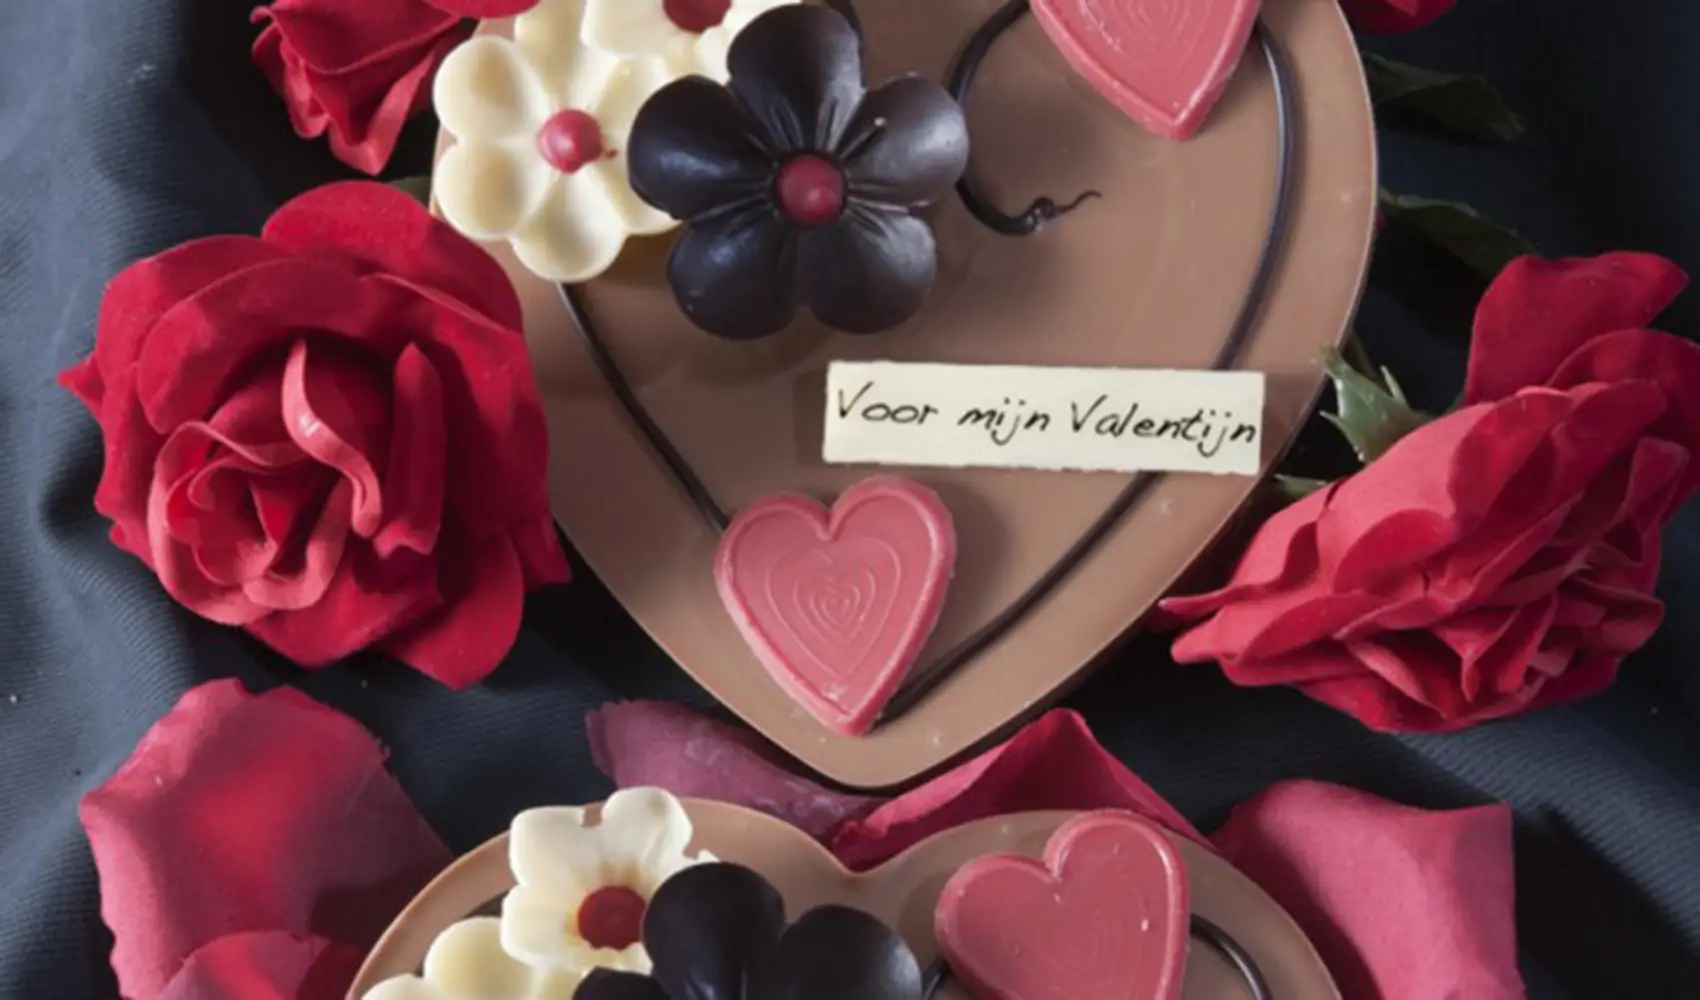 bonbon.nl-chocolatier-janson-zutphen-valentijn-chocolade-hart-680x1024 copy